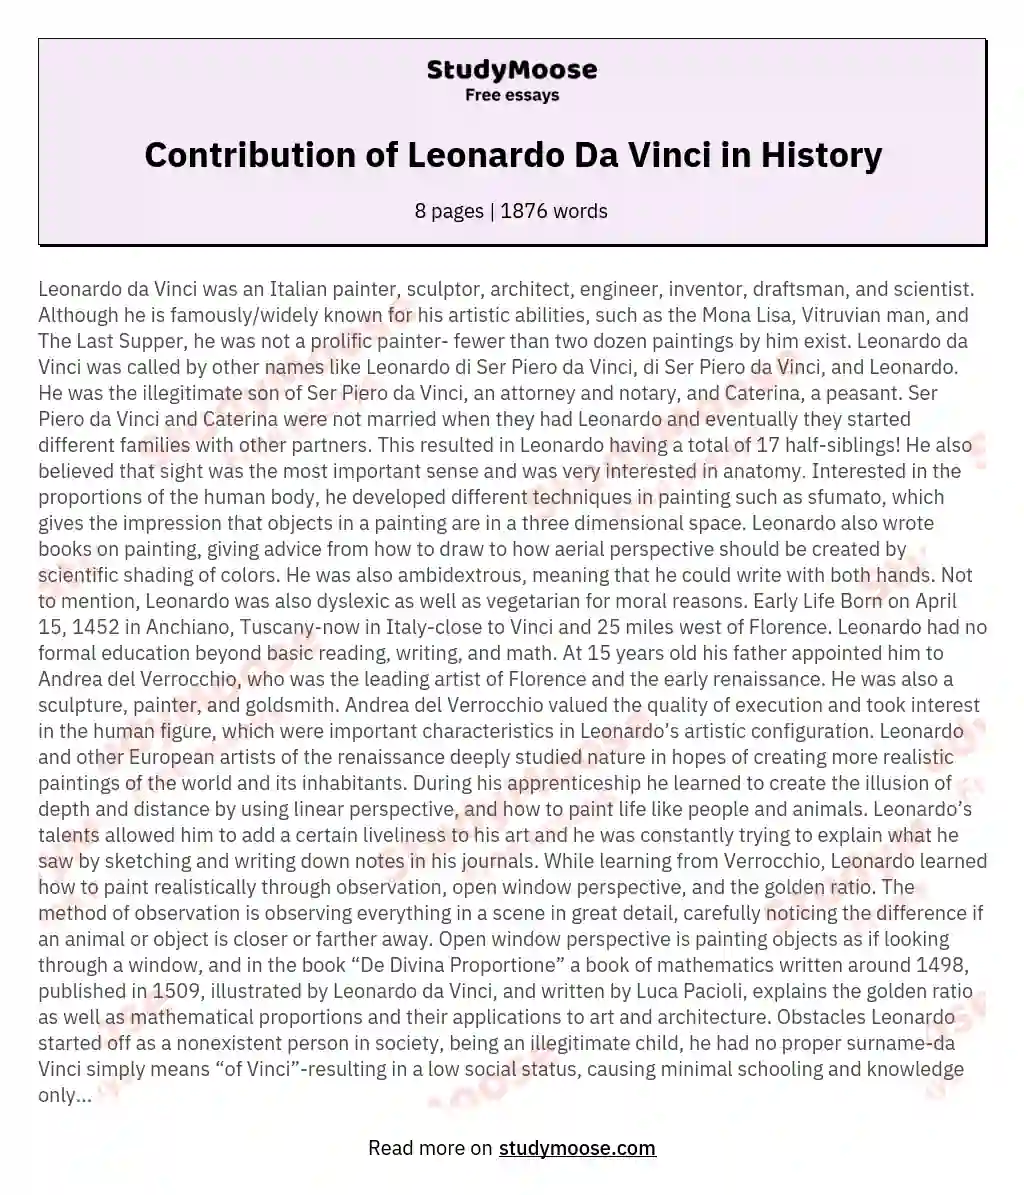 Contribution of Leonardo Da Vinci in History essay